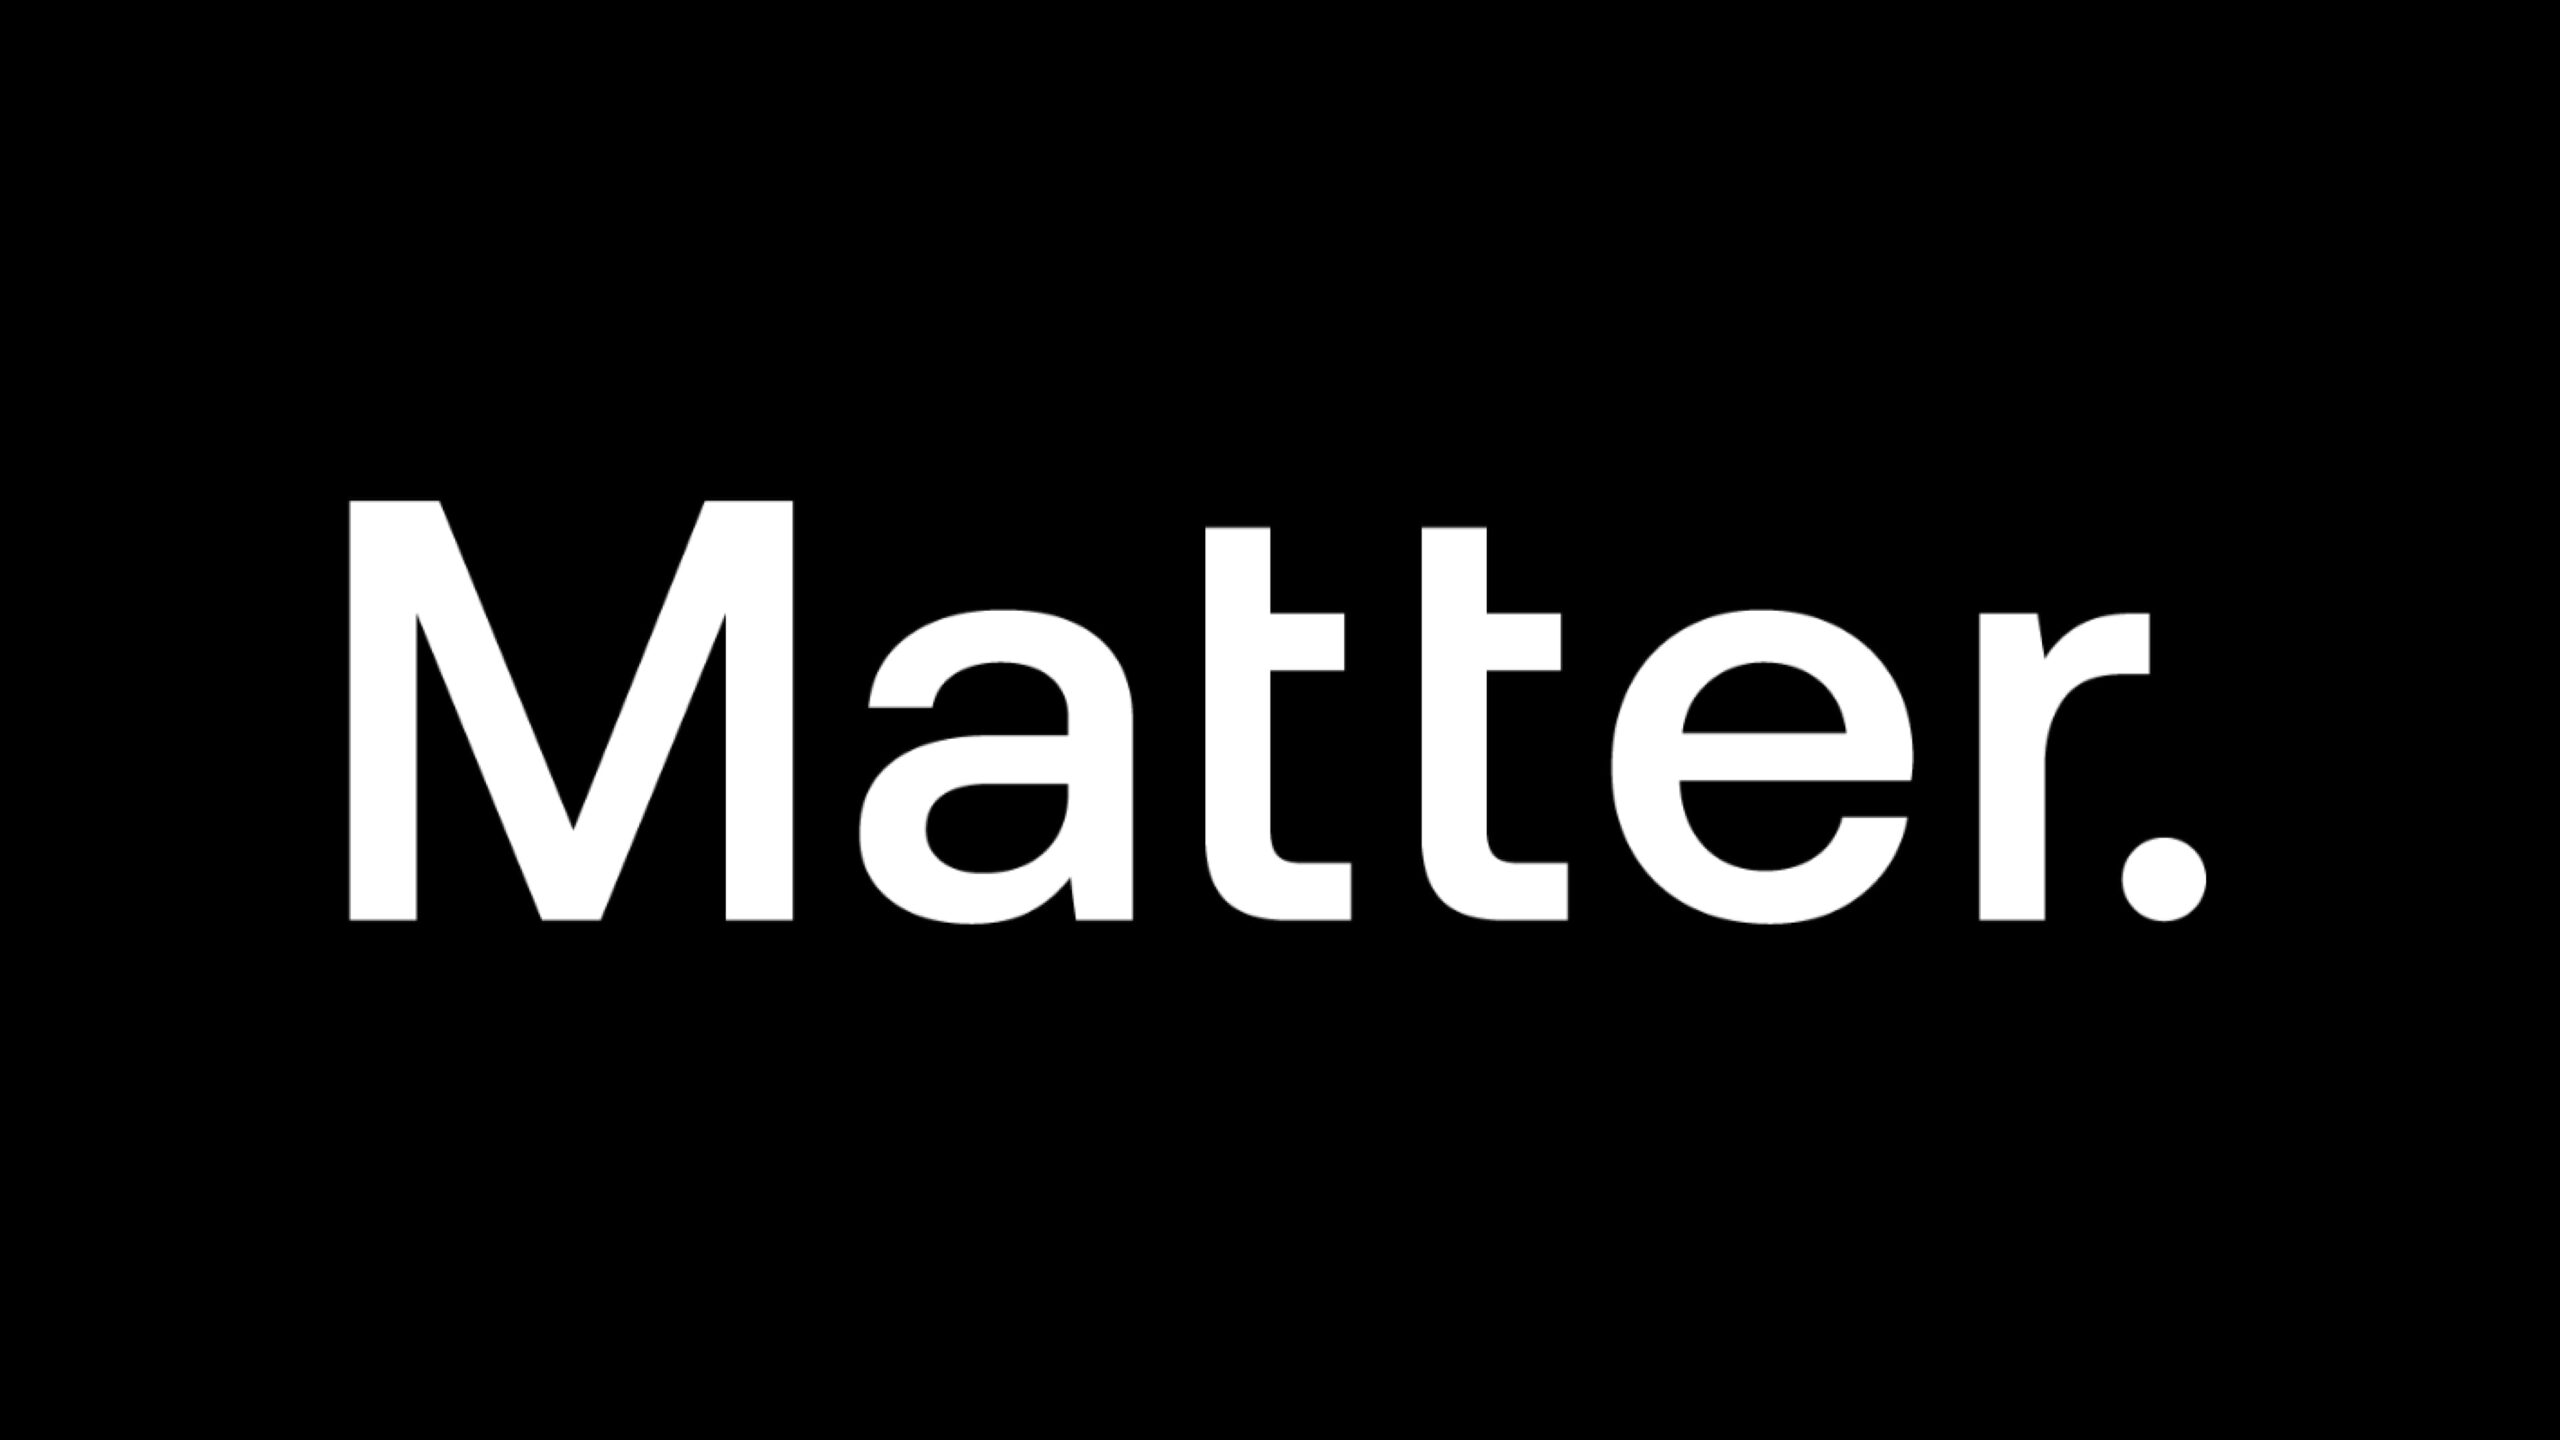 Matterが1回の洗濯でマイクロプラスチックを除去するフィルターを開発し、1,000万ドルを調達